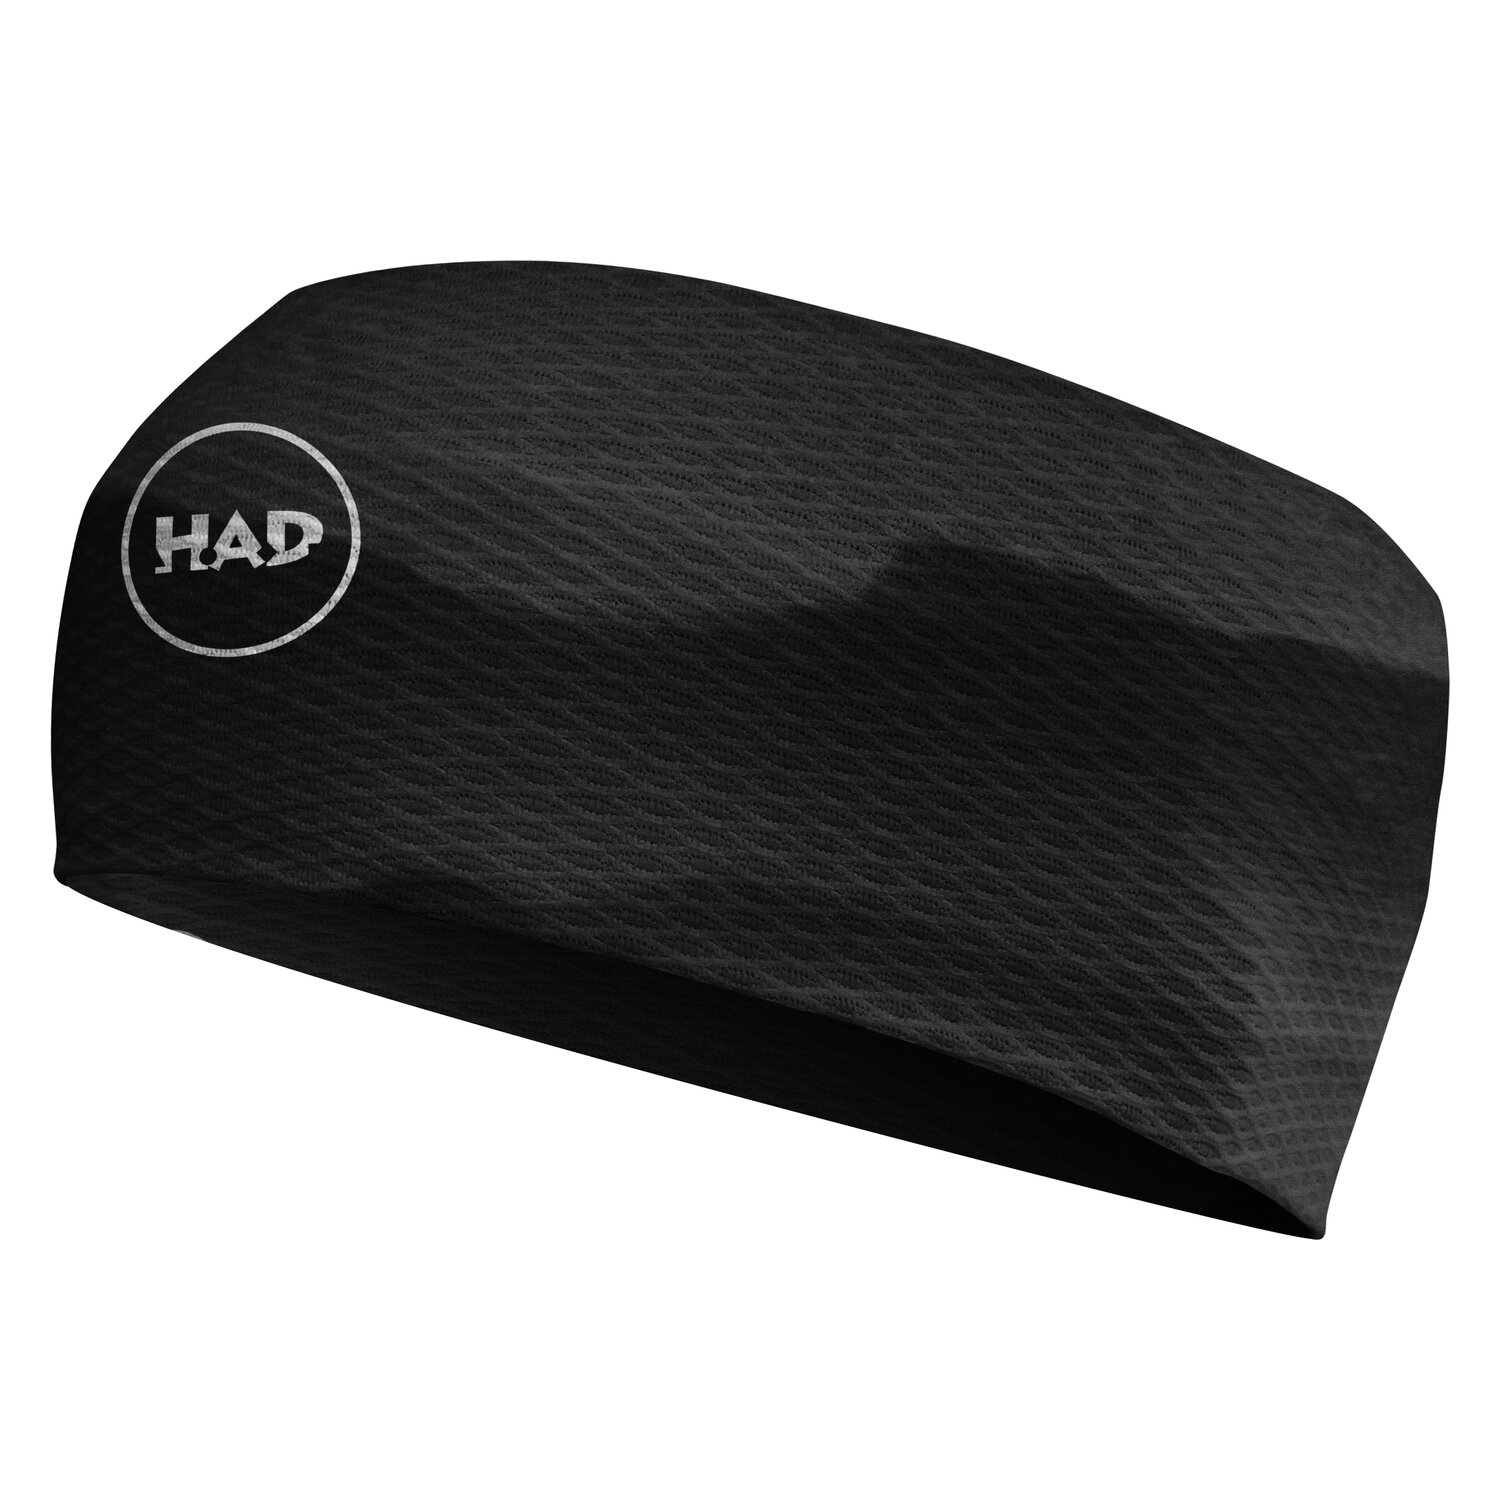 H.A.D. Headband Ultralight Mesh into black | Einheitsgröße